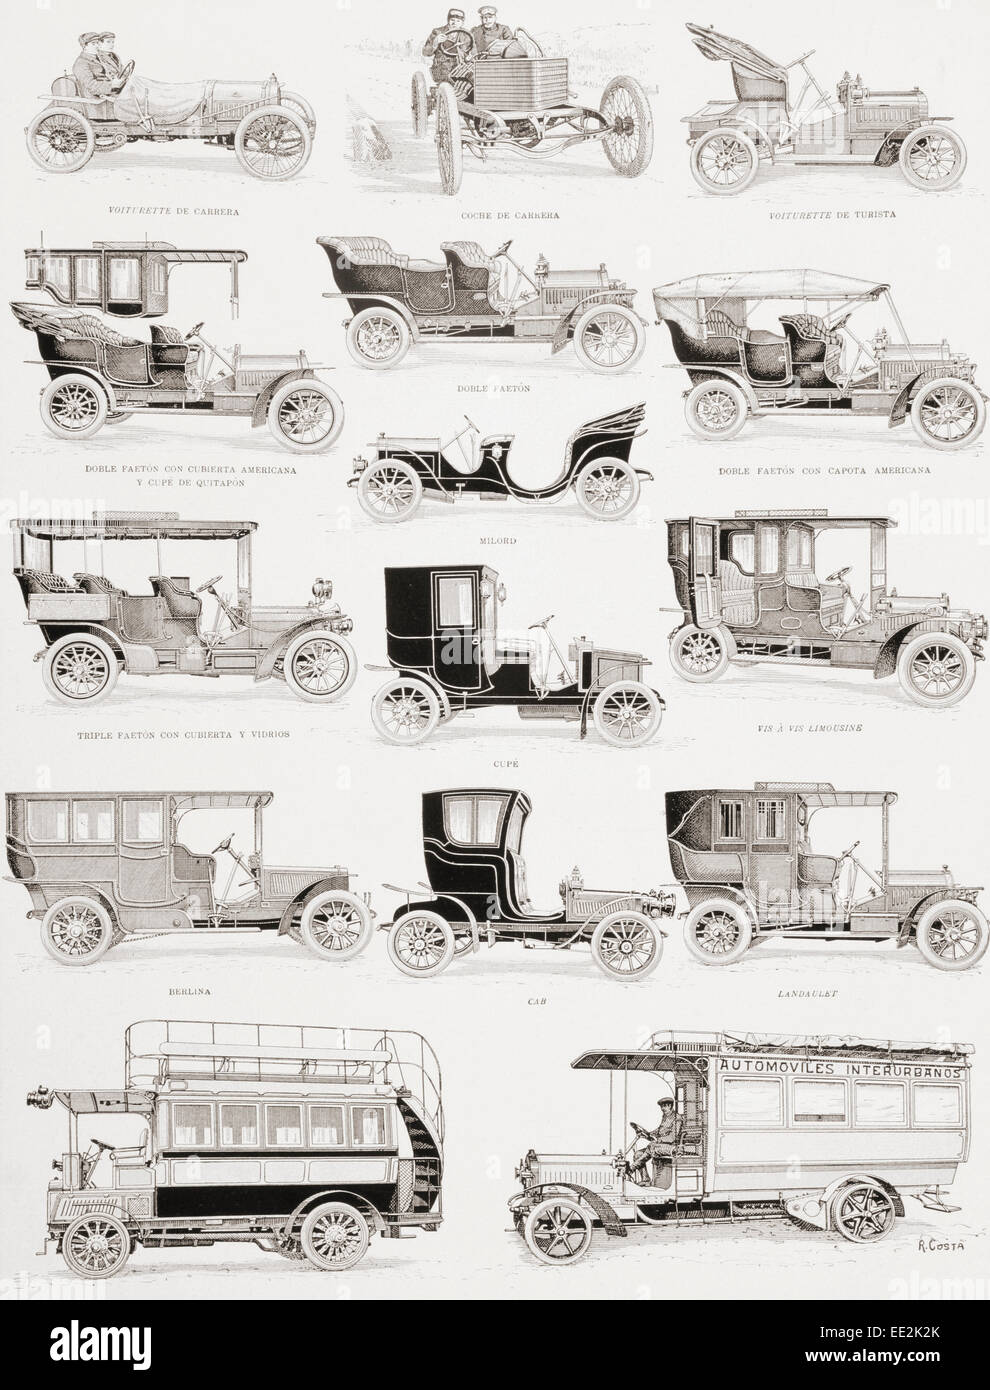 Autovetture e autobus dal primo decennio del ventesimo secolo. Didascalie in lingua spagnola. Foto Stock